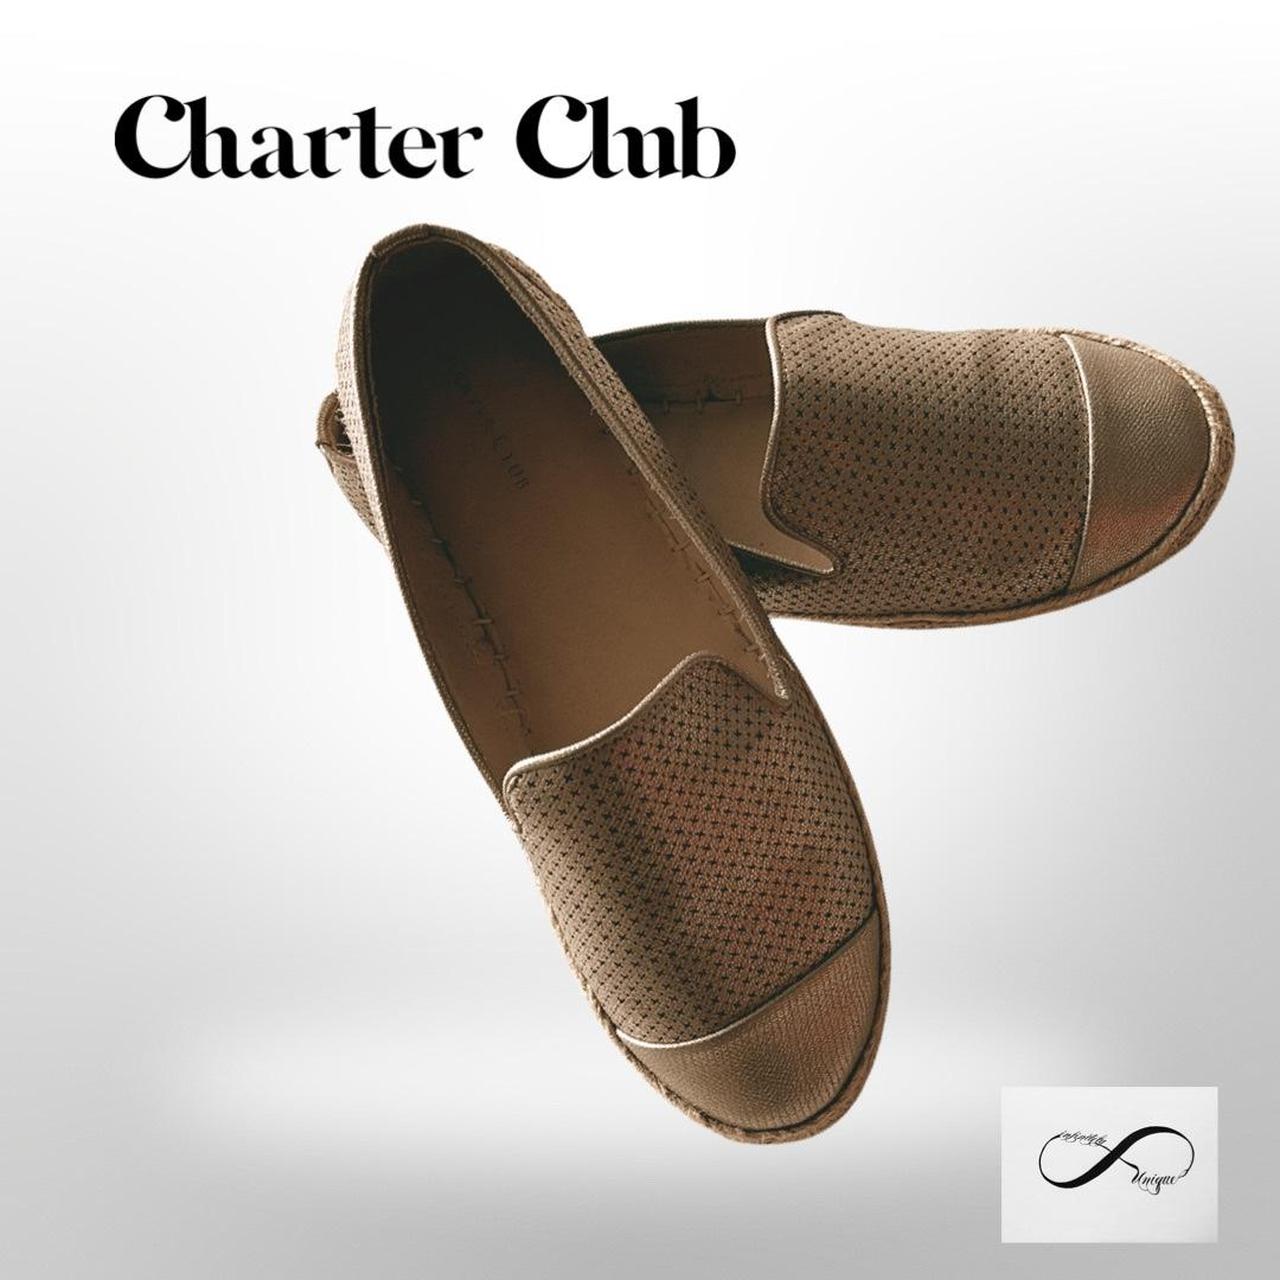 Charter Club Women's Footwear (2)